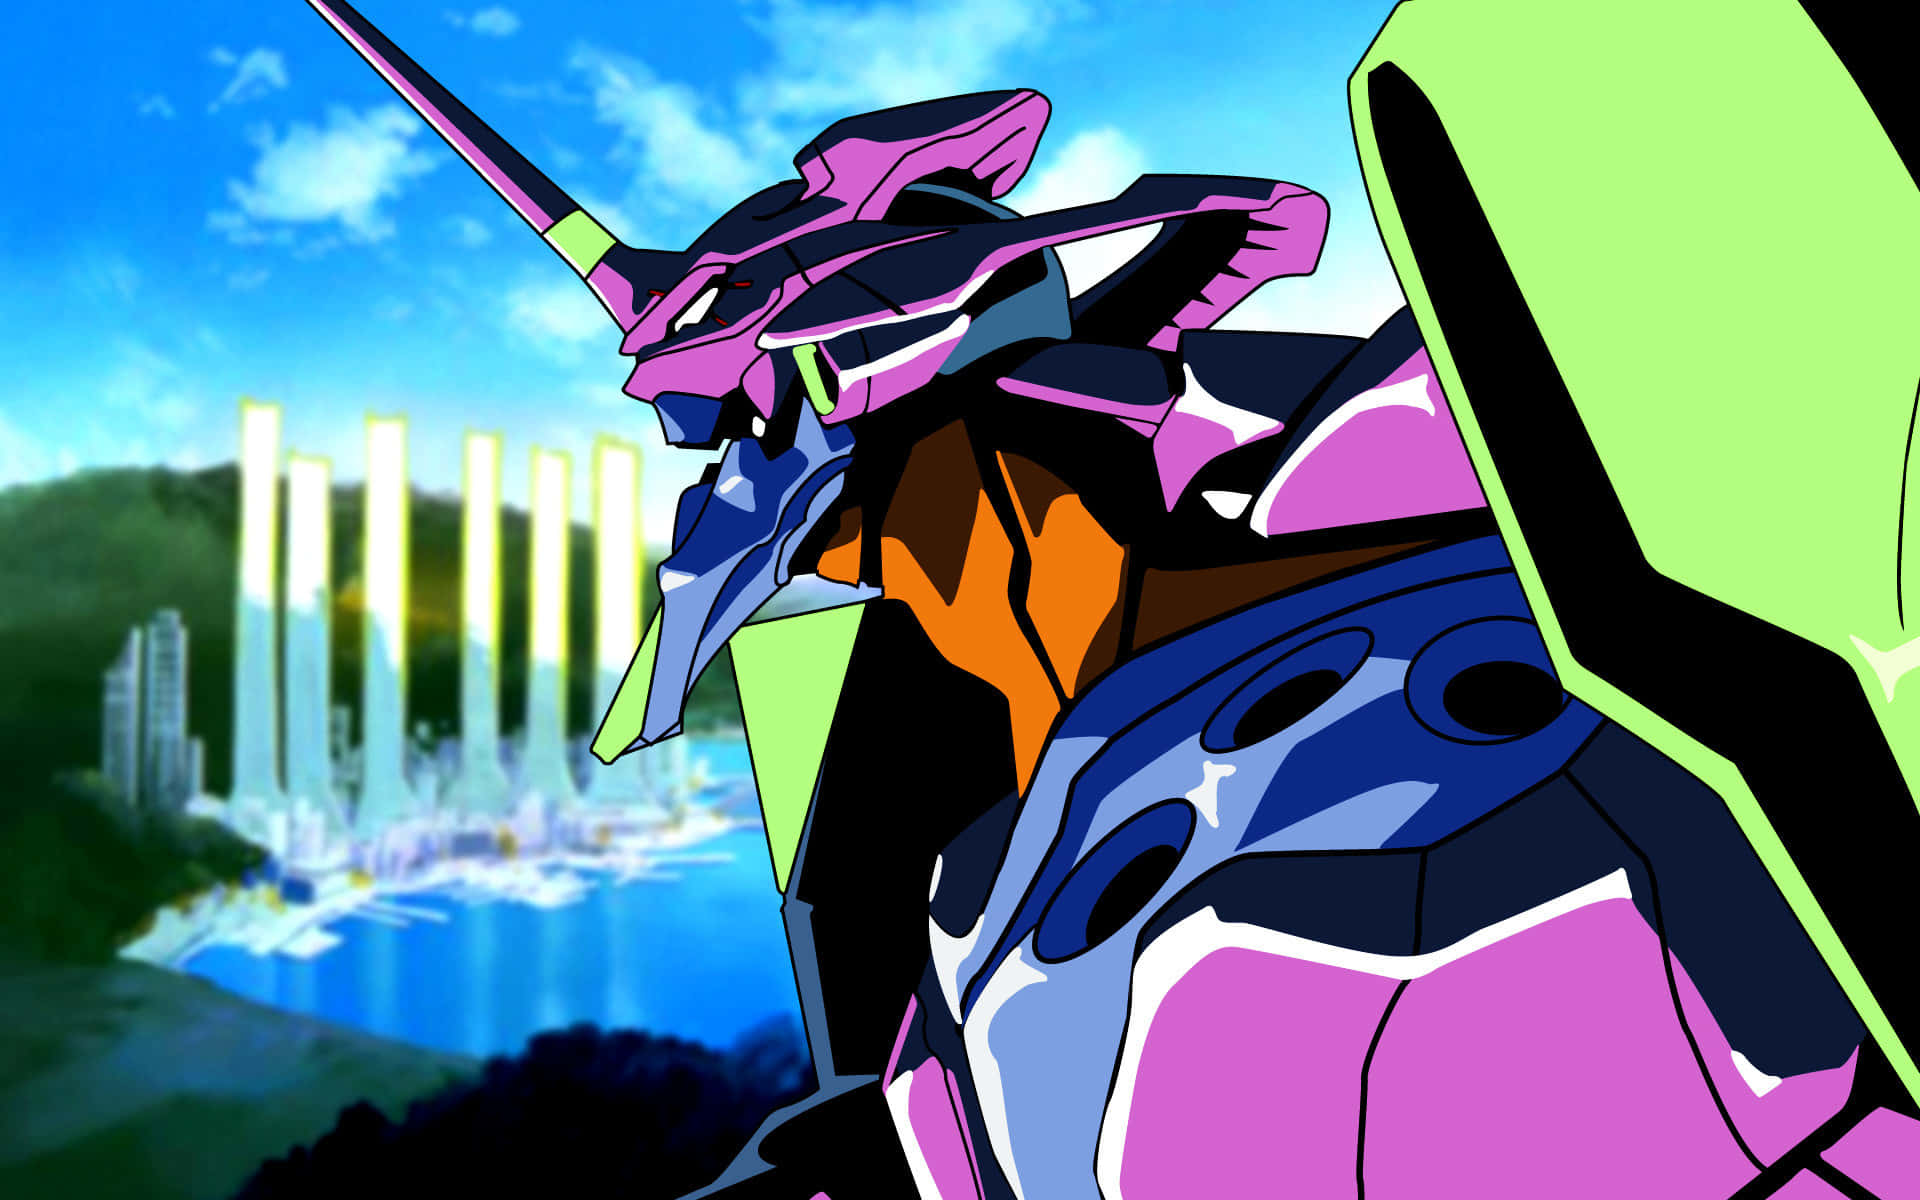 Gendo Ikari, Commander of NERV in Neon Genesis Evangelion